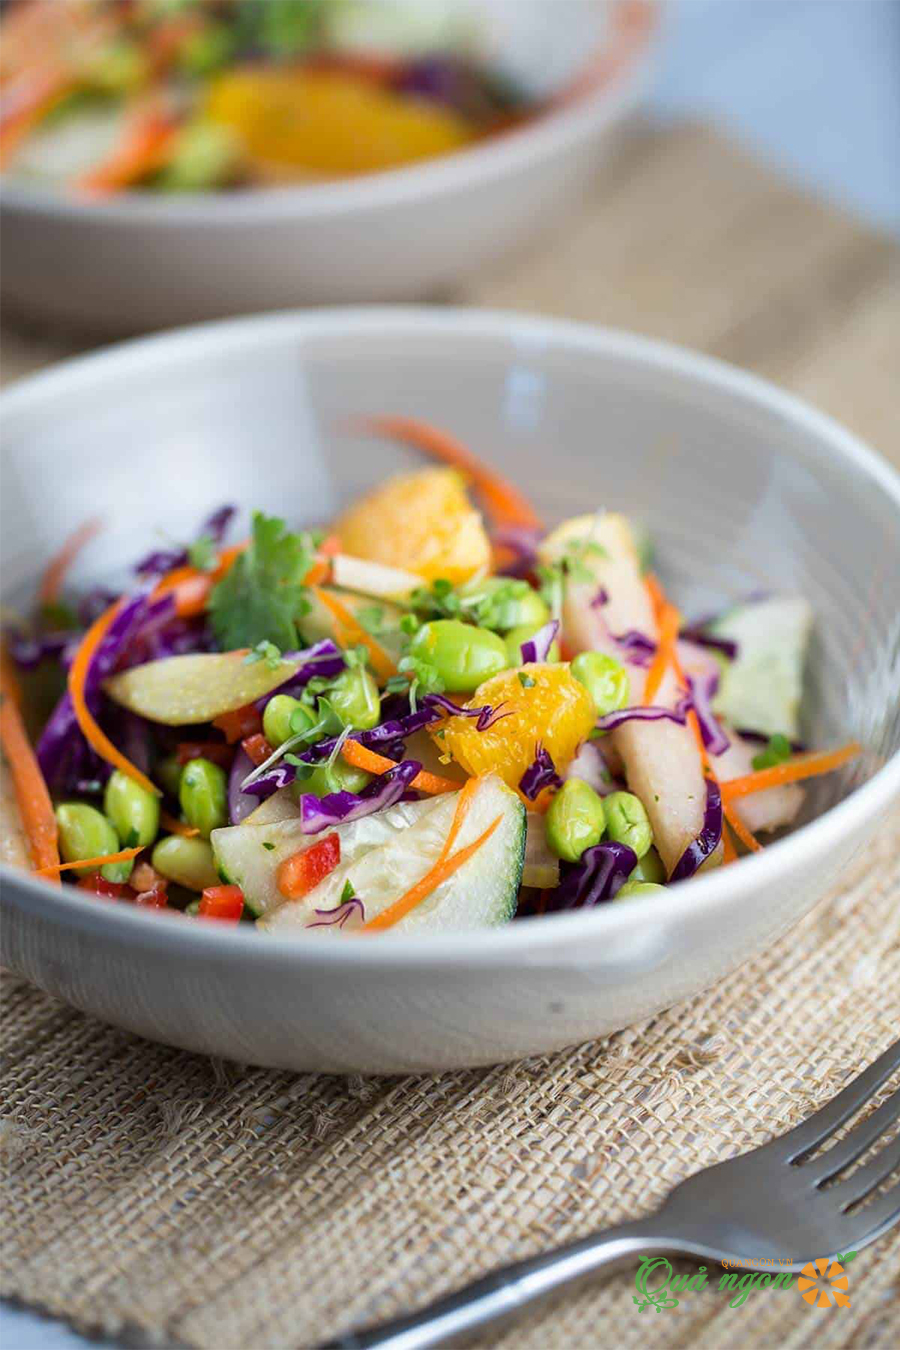 Salad rau củ quả với nước sốt cam gừng đầy màu sắc